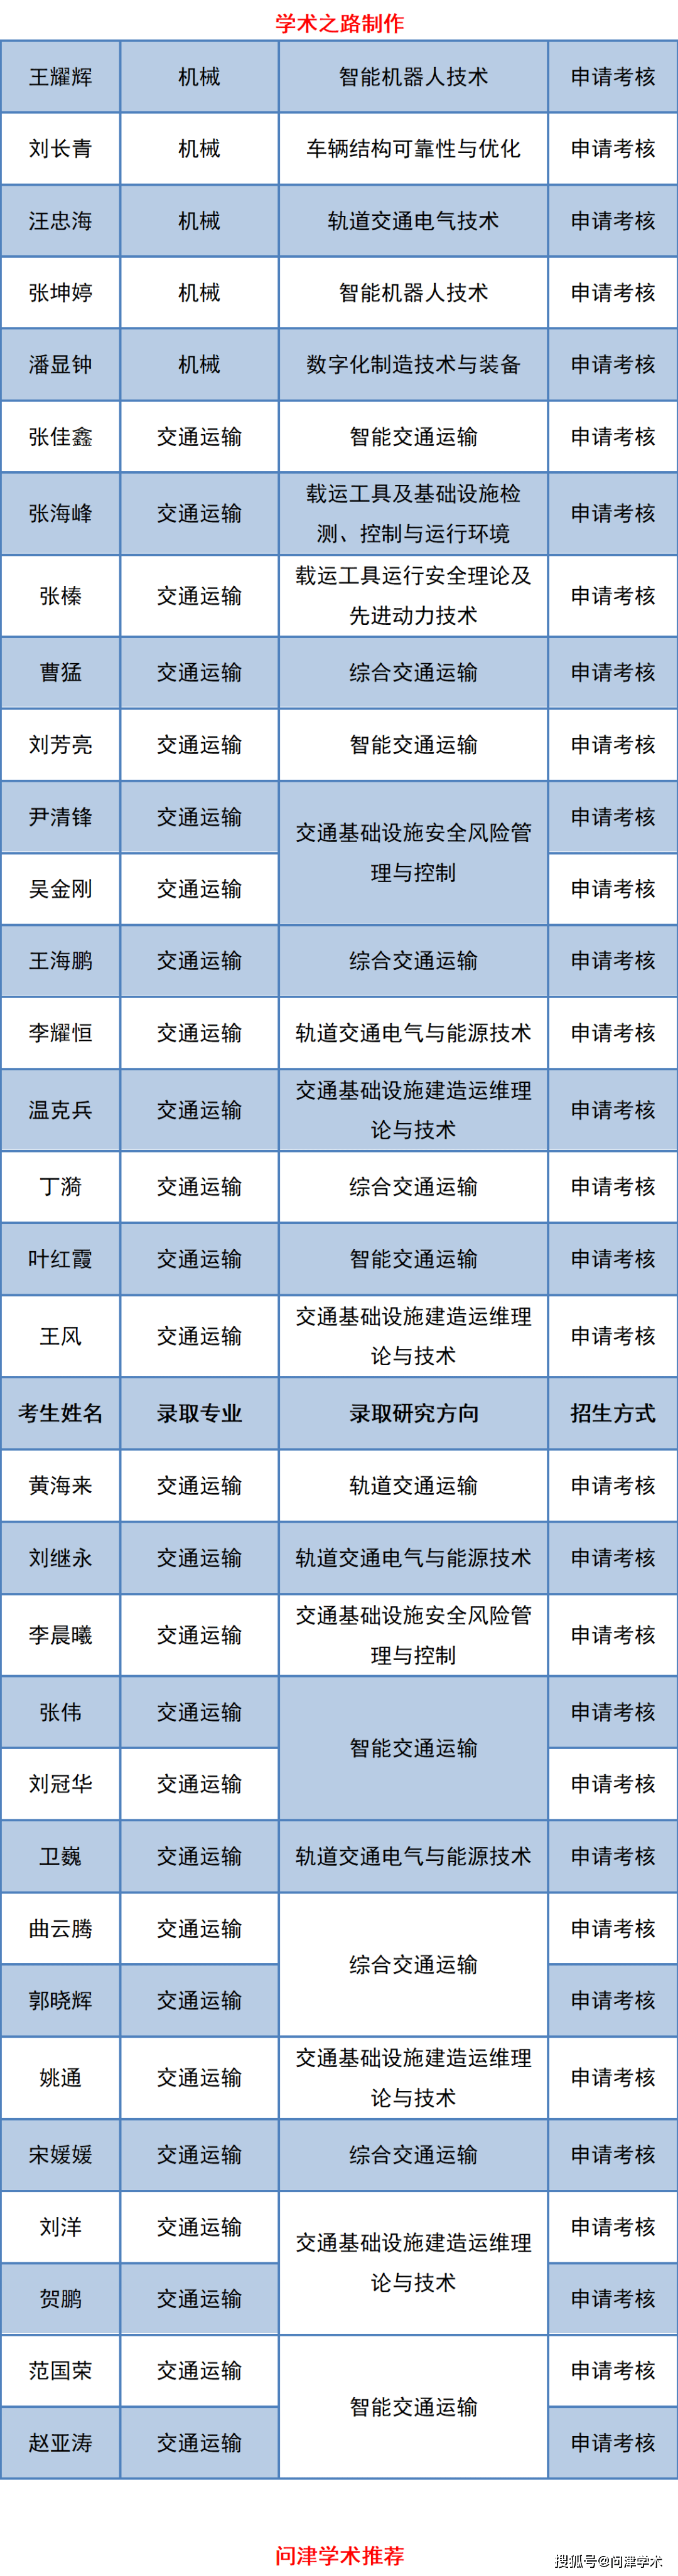 北京交通大学2021年博士研究生拟录取名单公示不含直博生560人